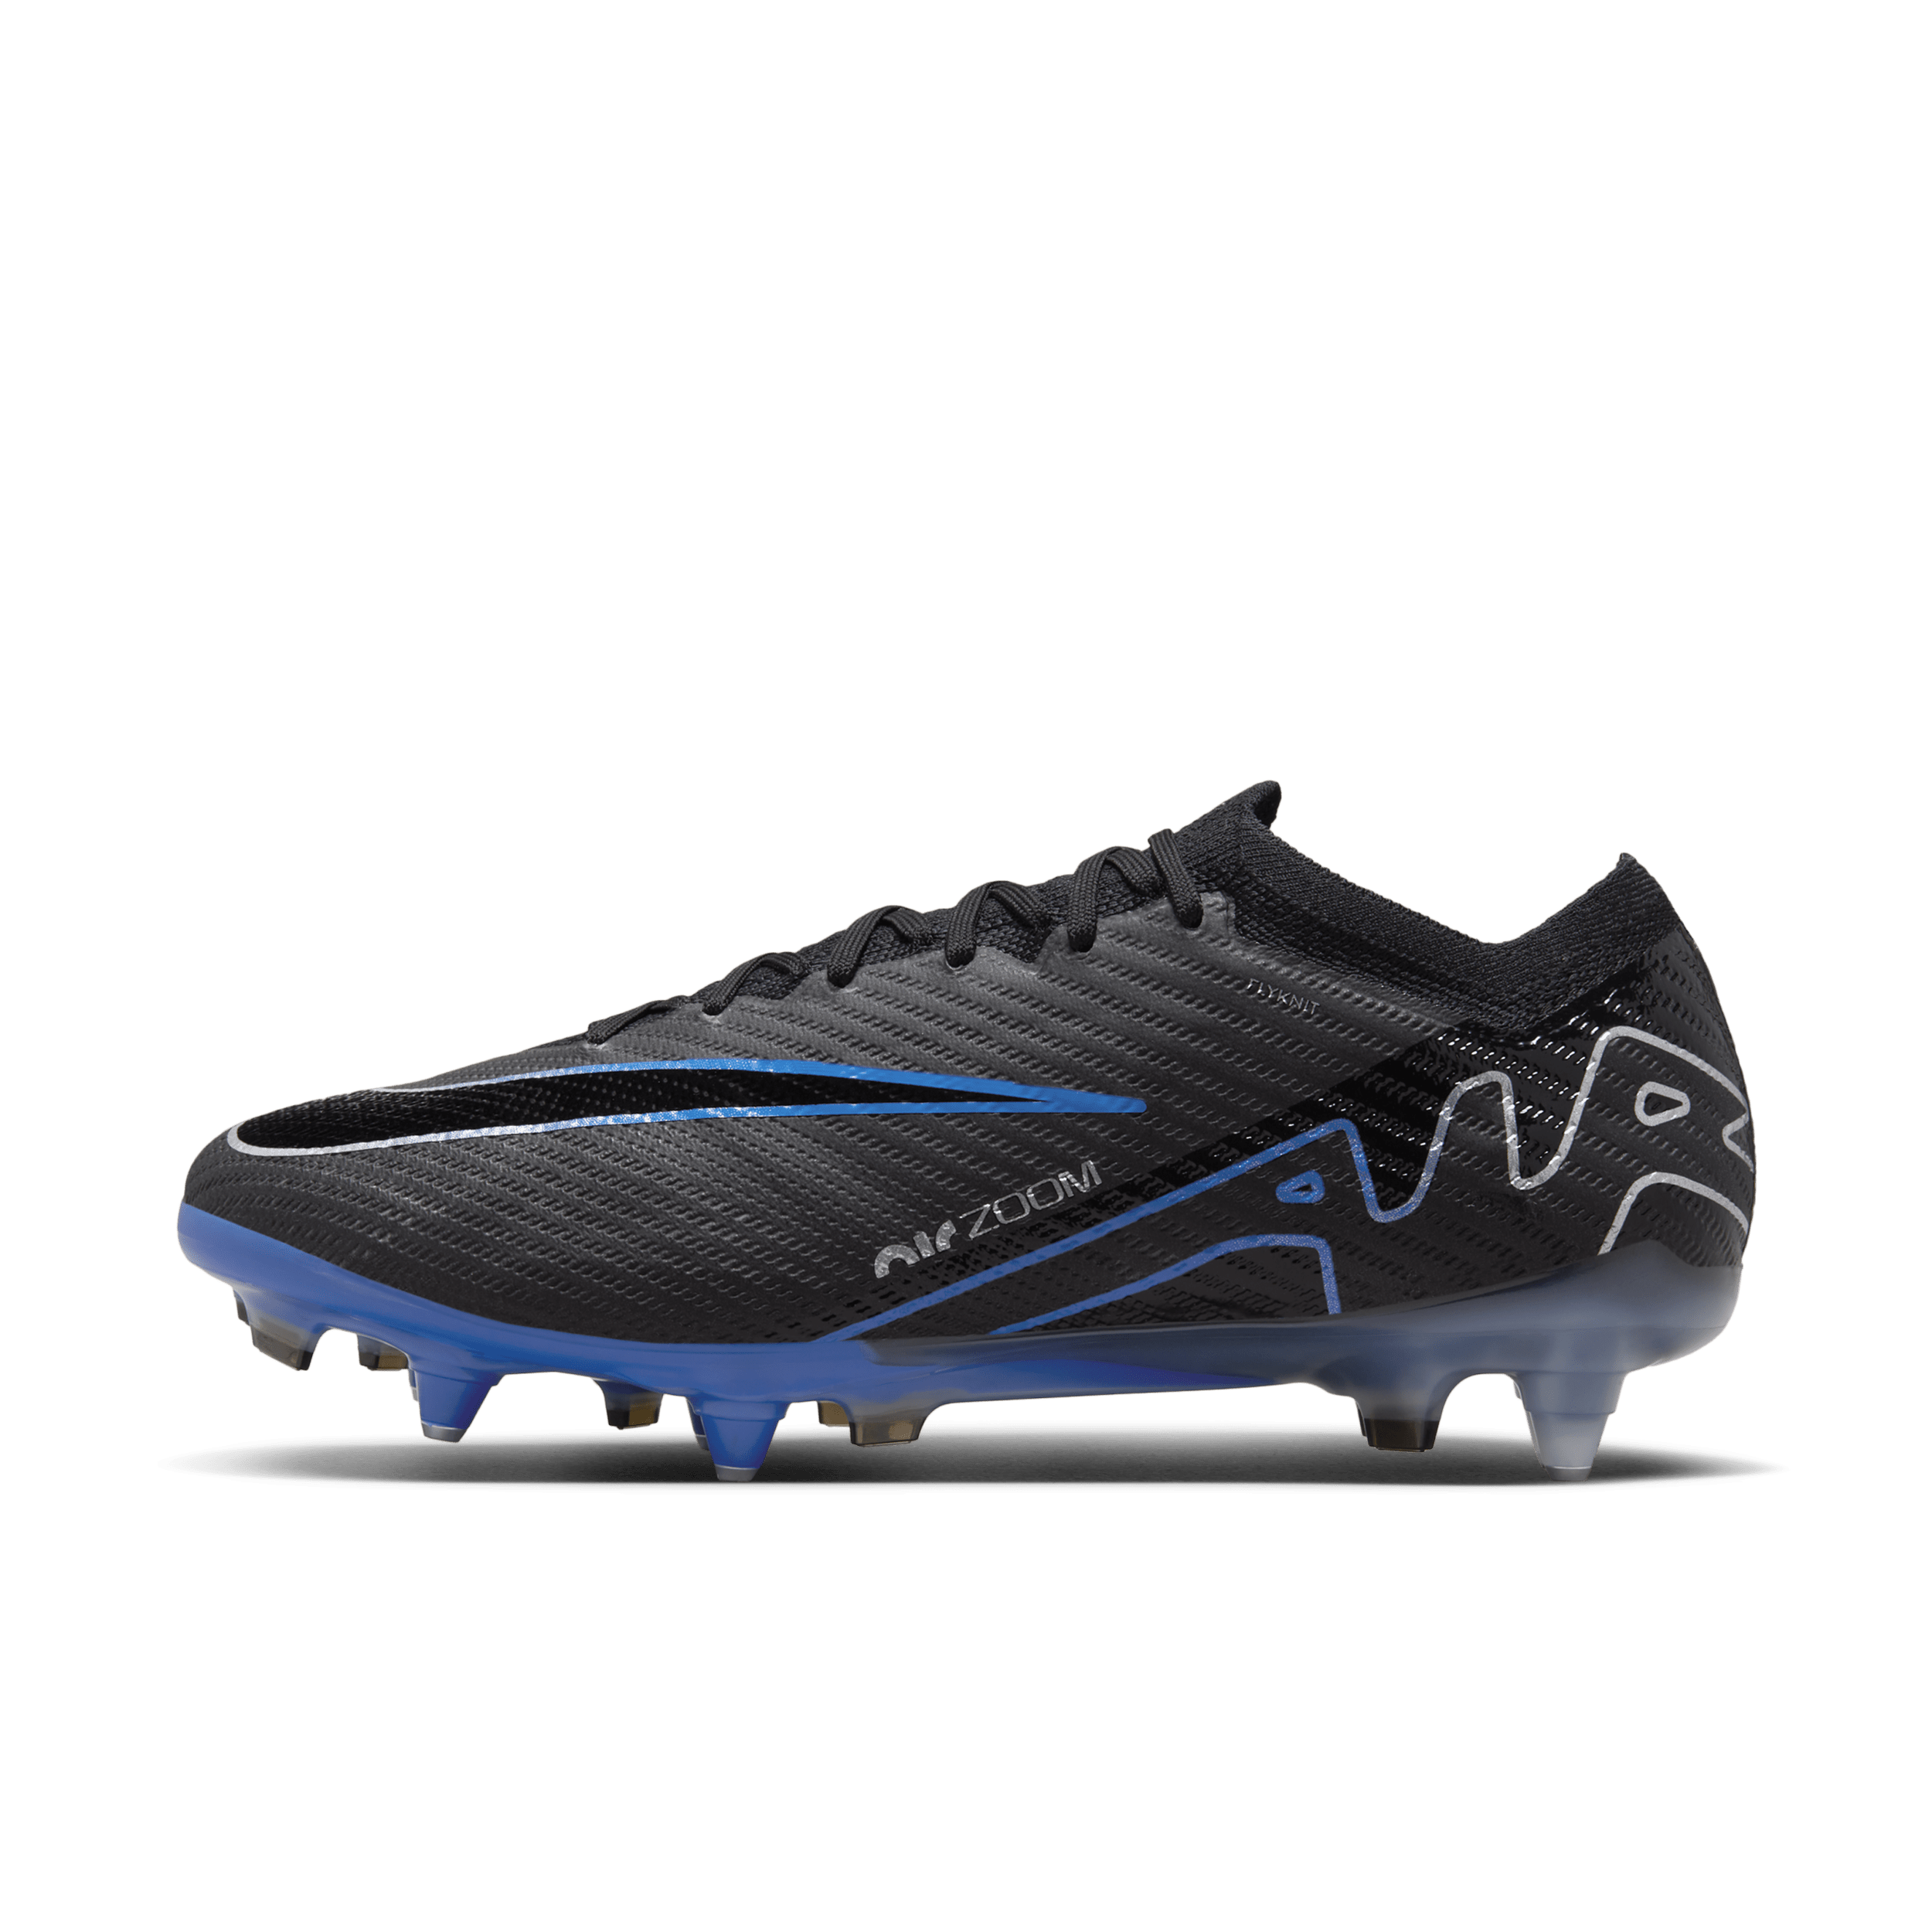 Nike Mercurial Vapor 15 Elite-fodboldstøvler (low-top) til blødt underlag - sort